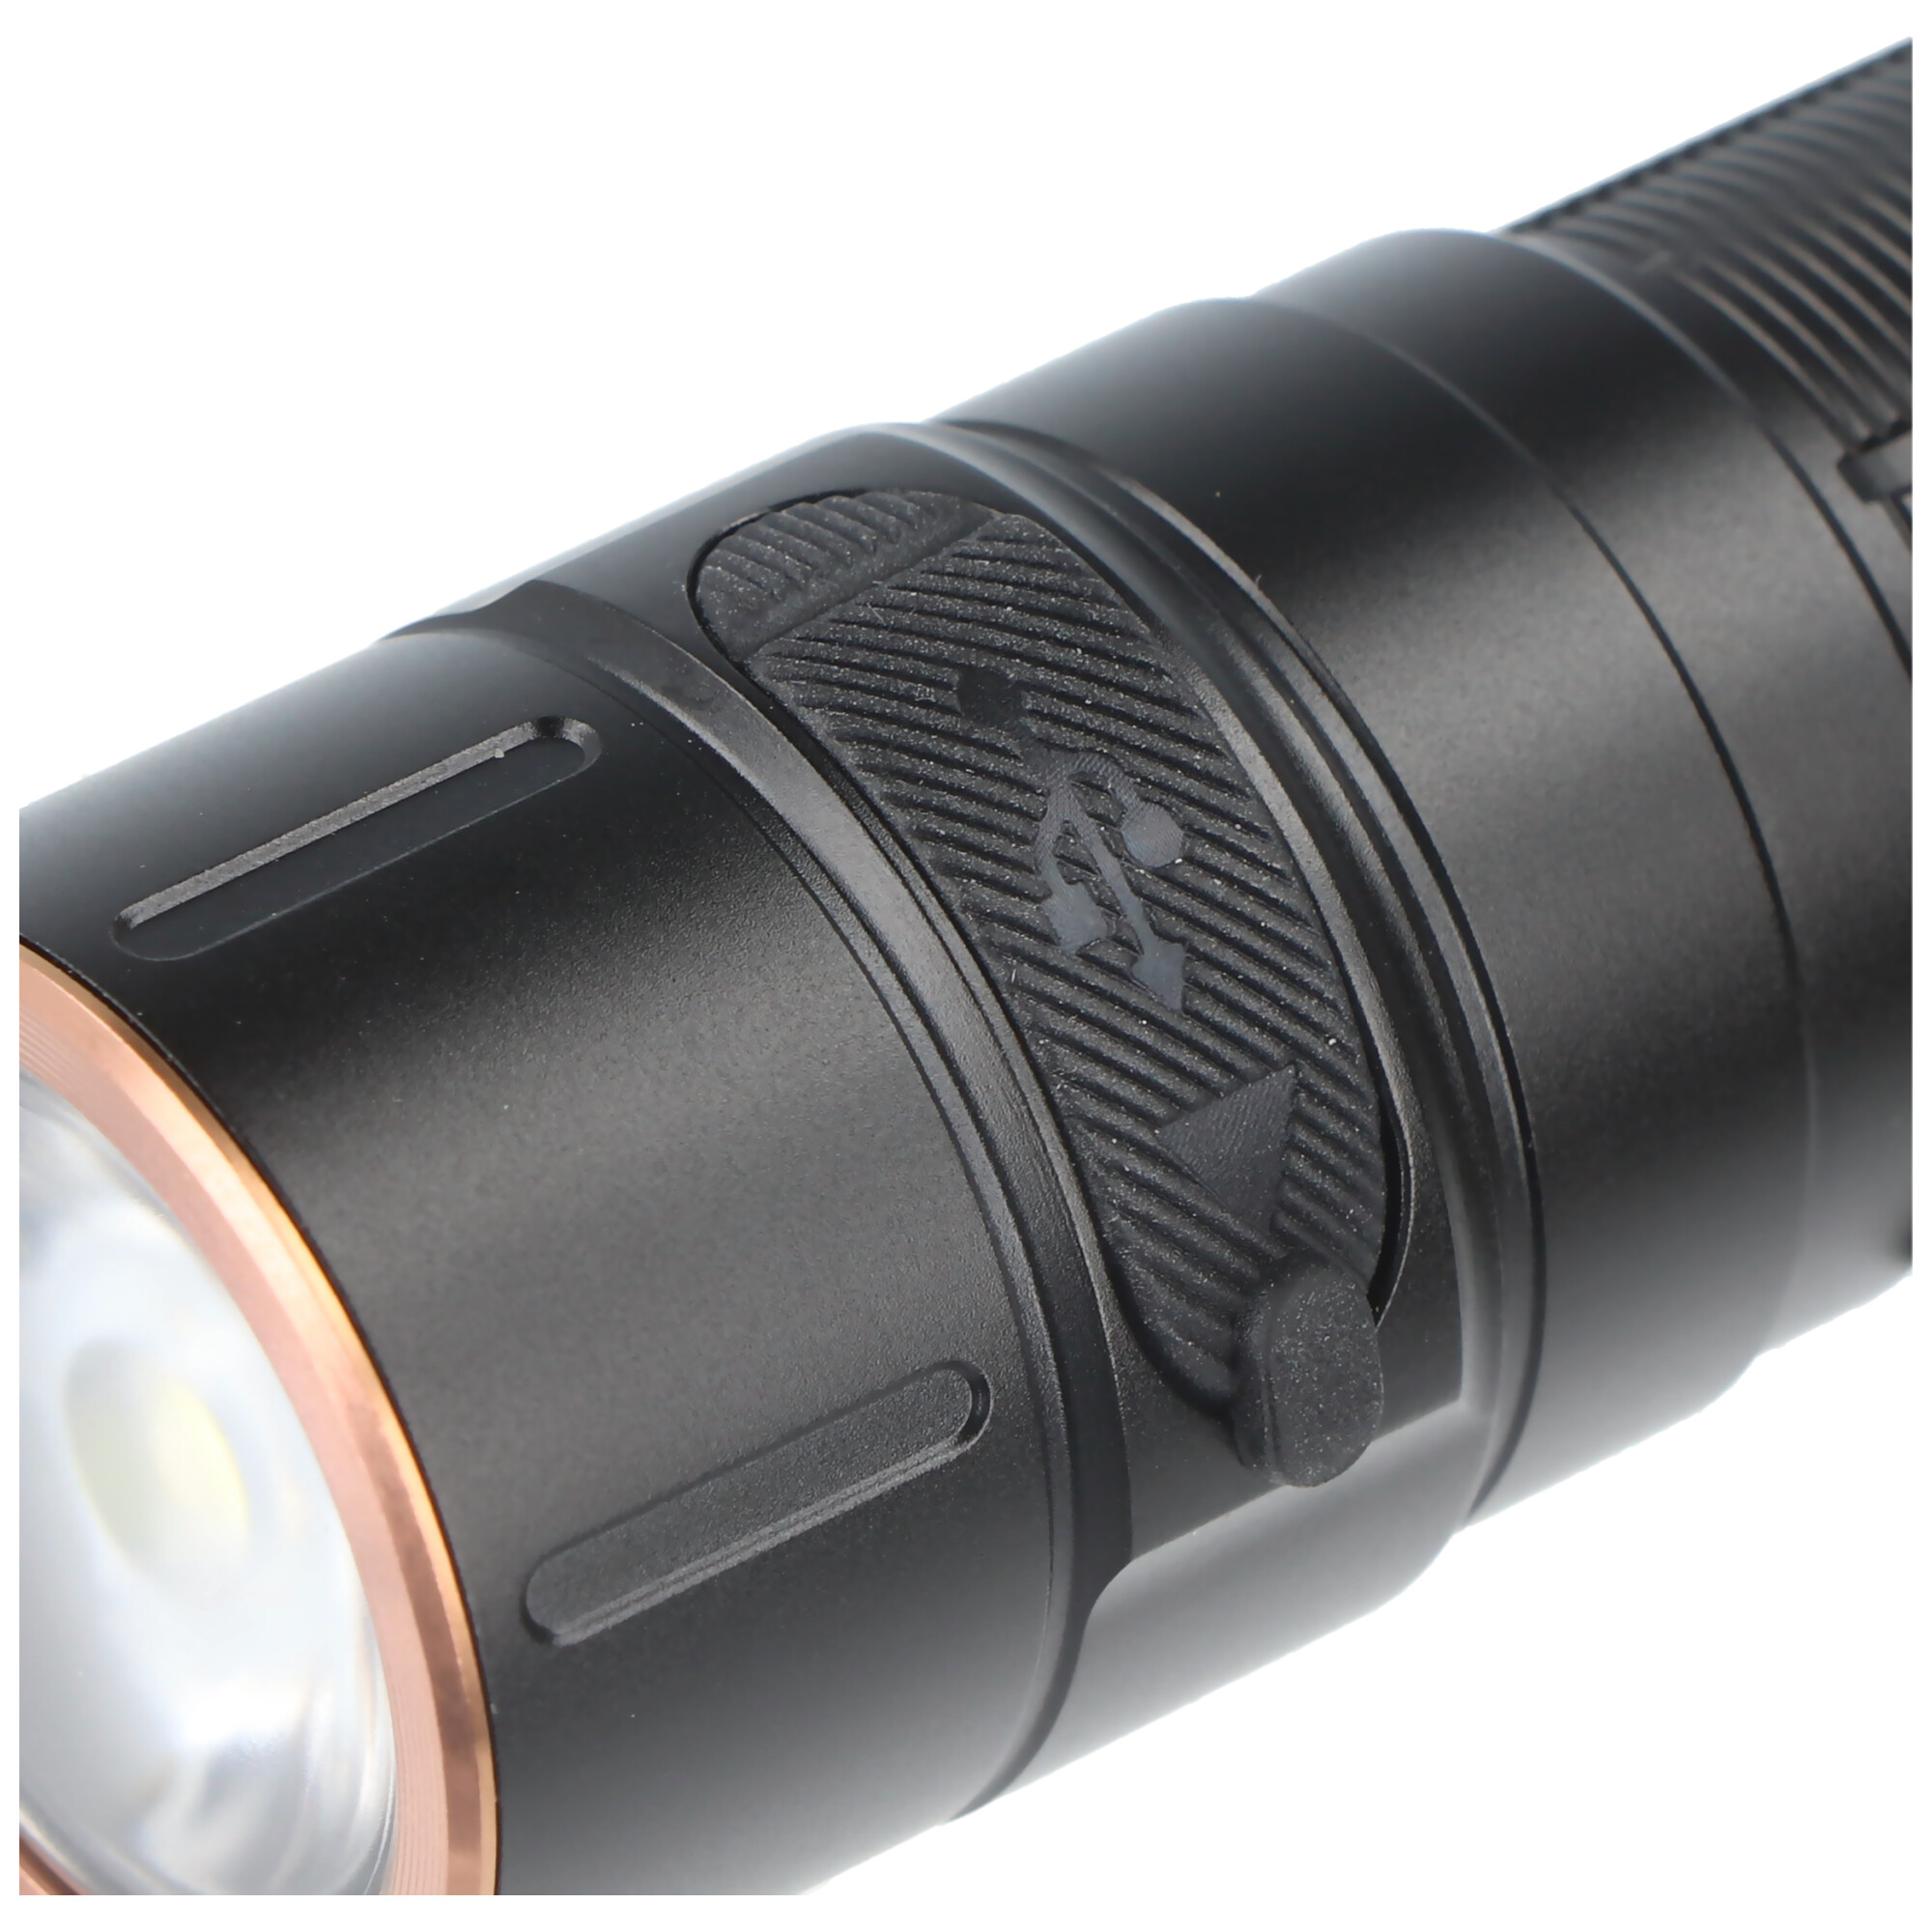 Fenix E28R LED-Taschenlampe mit USB-C Ladeanschluss, 1500 Lumen, inklusive ARB-L18-3400 Li-Ion Akku